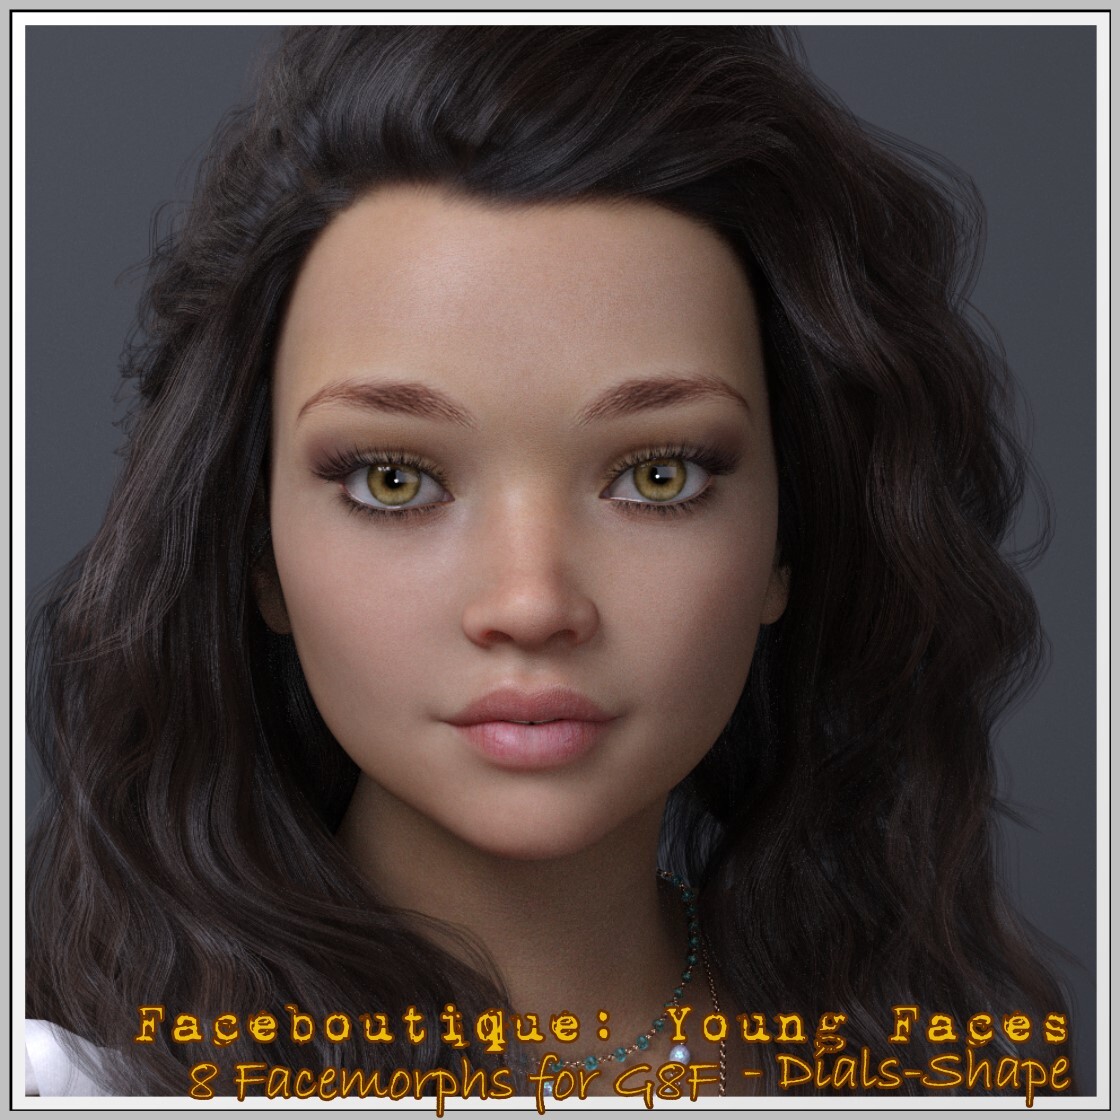 Faceboutique-YoungFace-G8F by: LUNA3D, 3D Models by Daz 3D